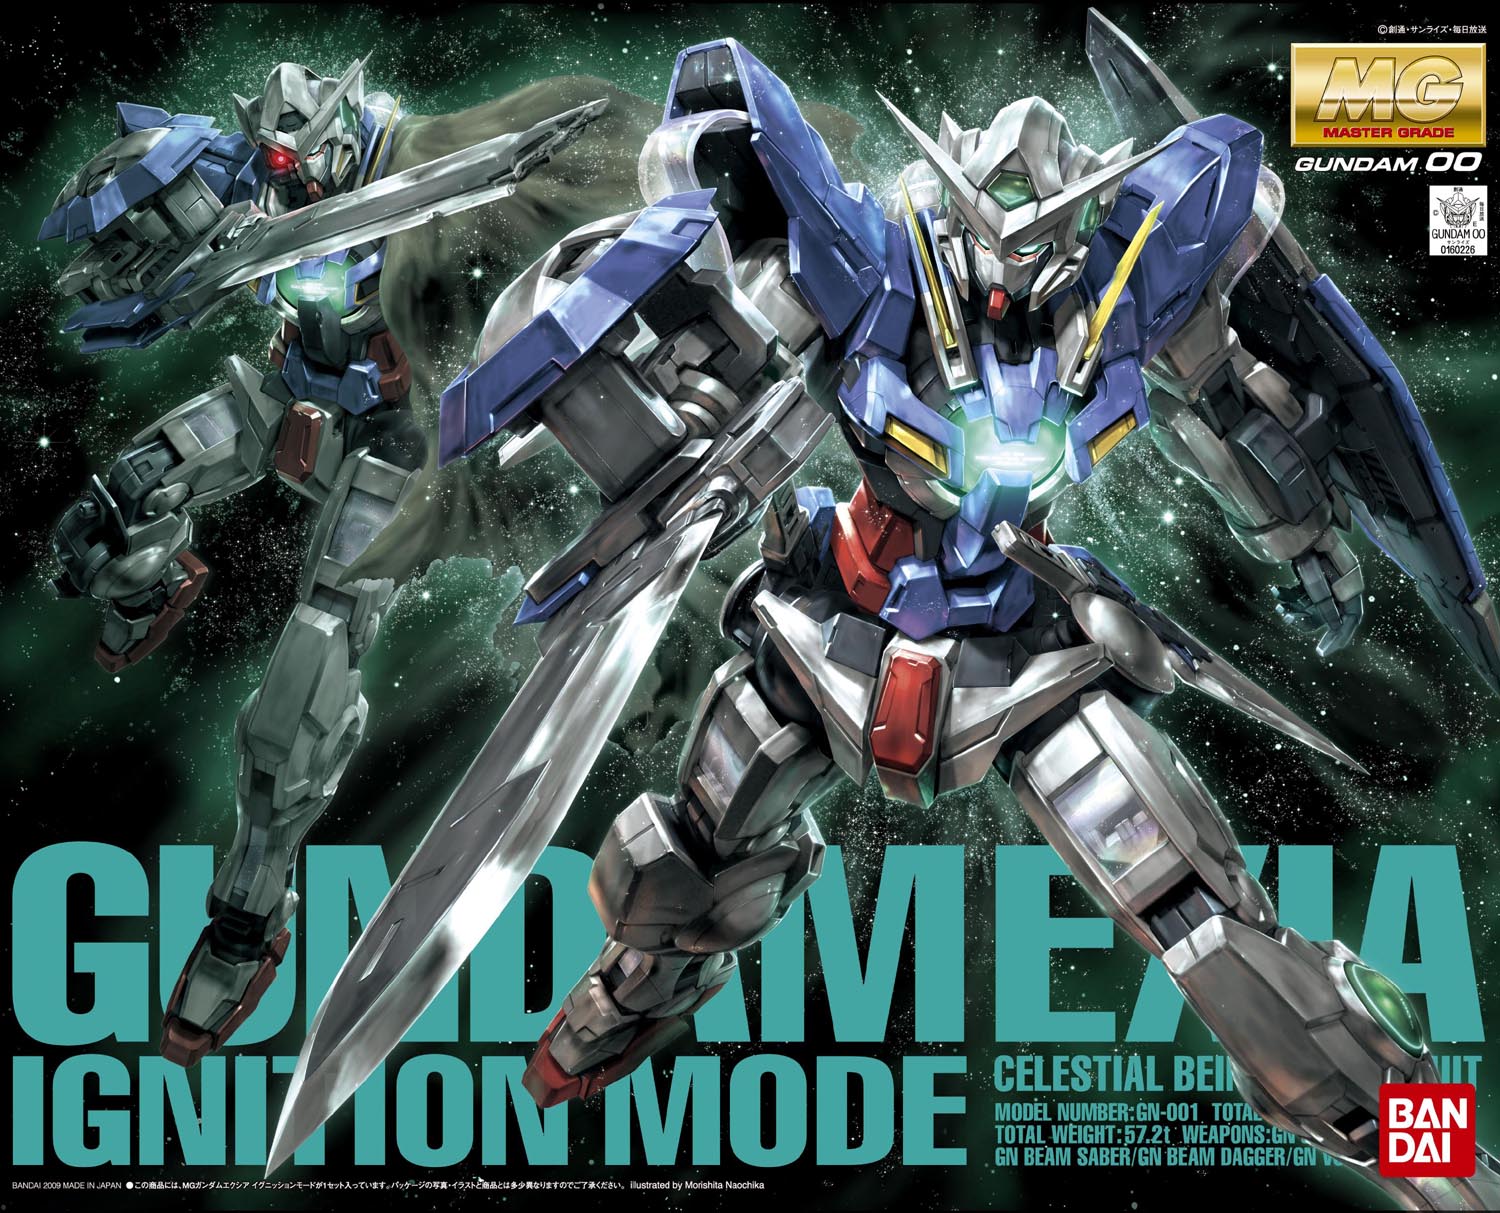 MG Gundam Exia Ignition Mode 1/100